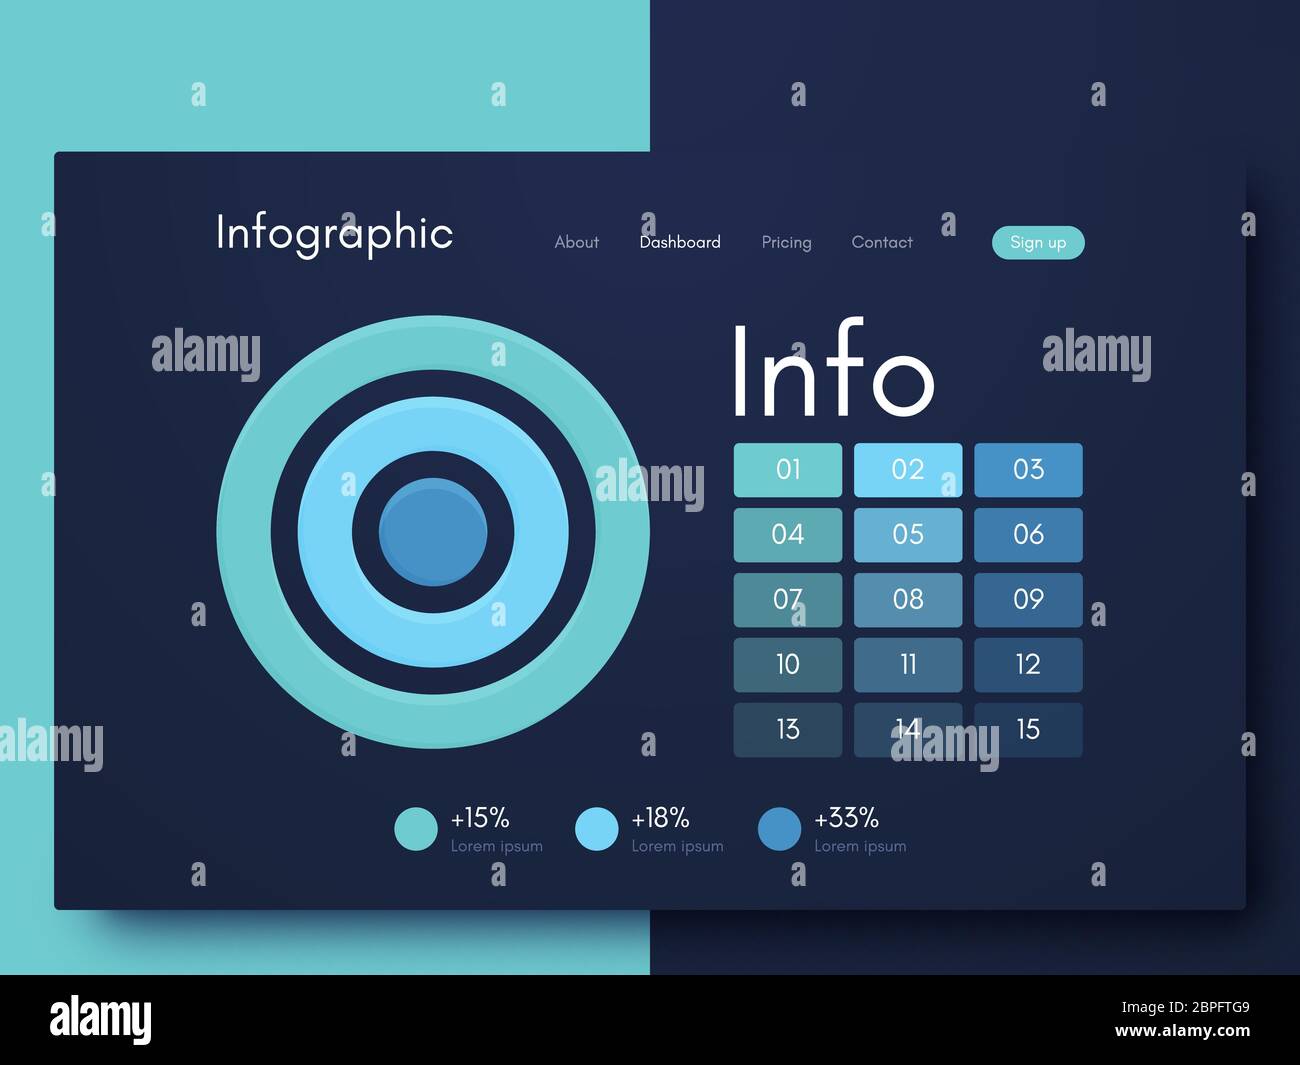 Vektorgrafische Infografiken. Vorlage zum Erstellen mobiler Anwendungen, Workflow-Layout, Diagramm, Banner, Webdesign, Infografik für Unternehmen. lagerbestand vect Stock Vektor